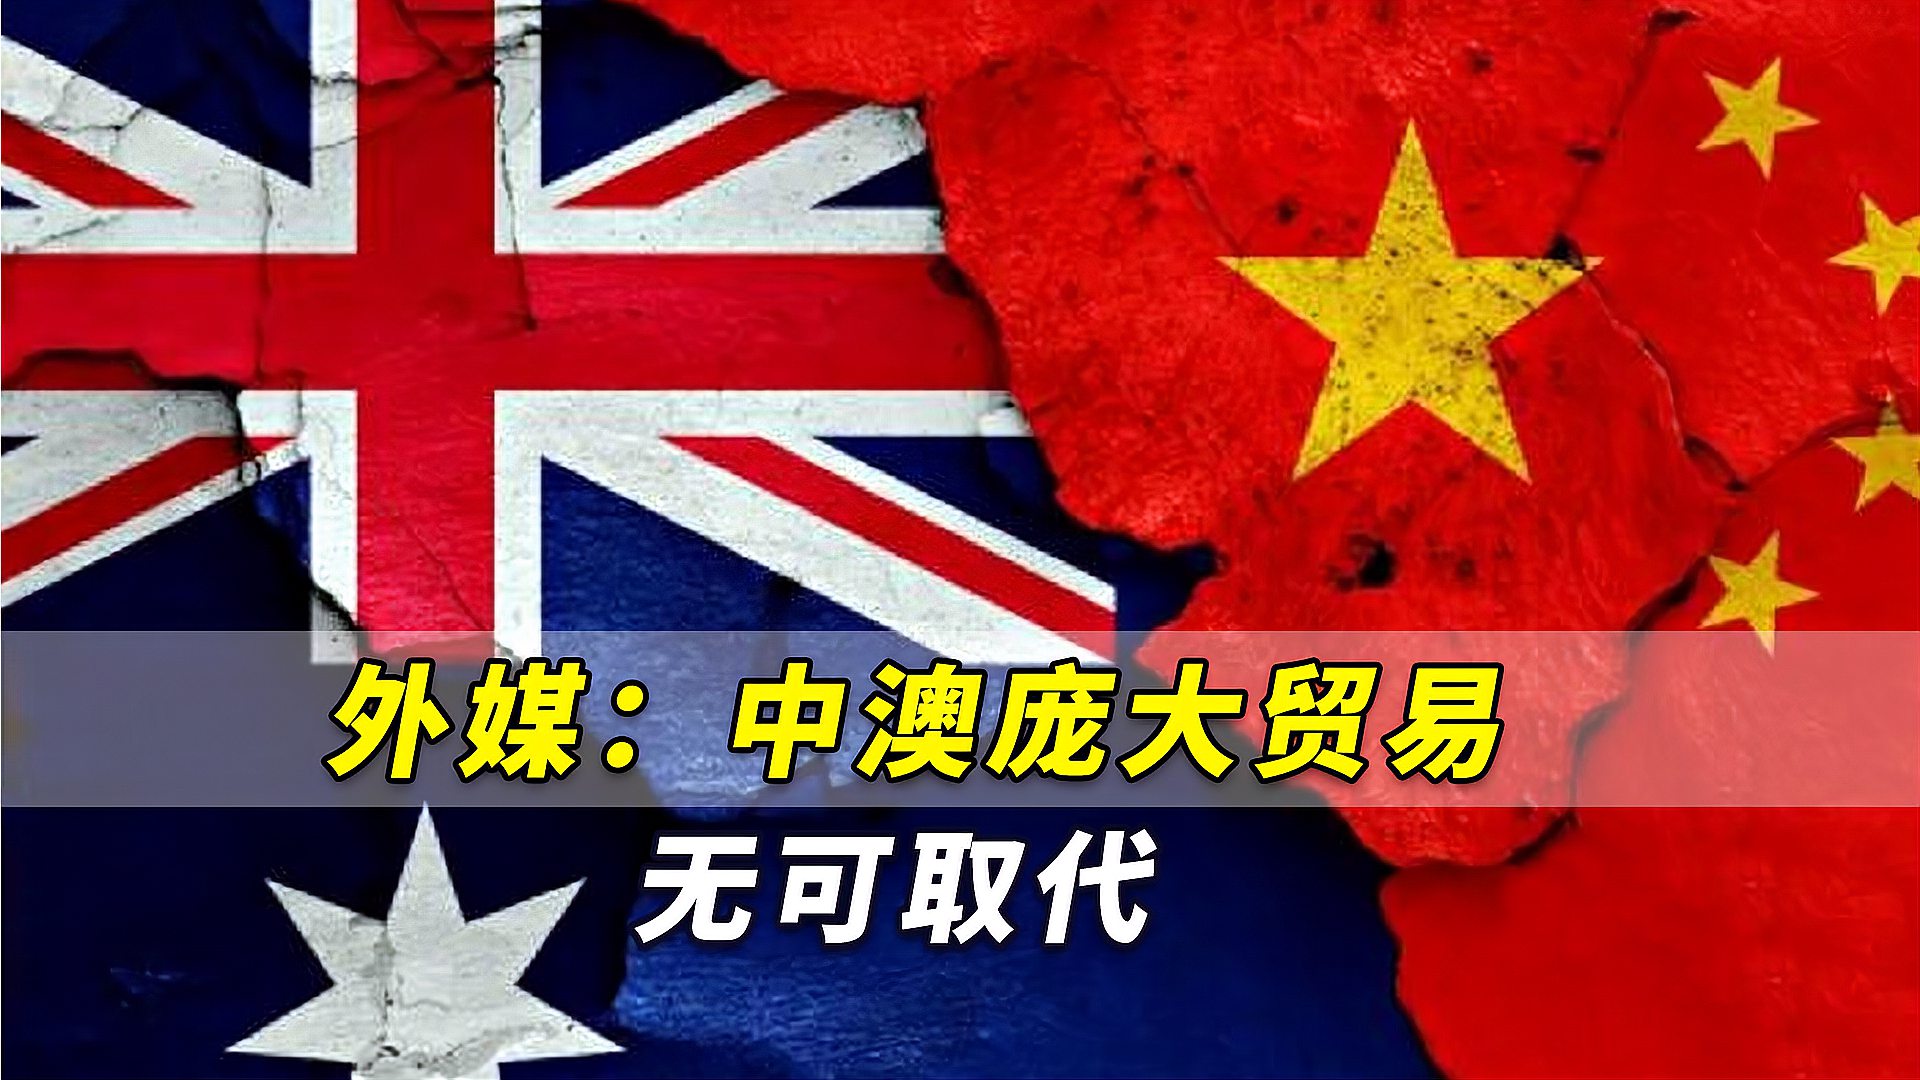 外媒中澳庞大贸易无可取代澳大利亚不得不与中国荣辱与共